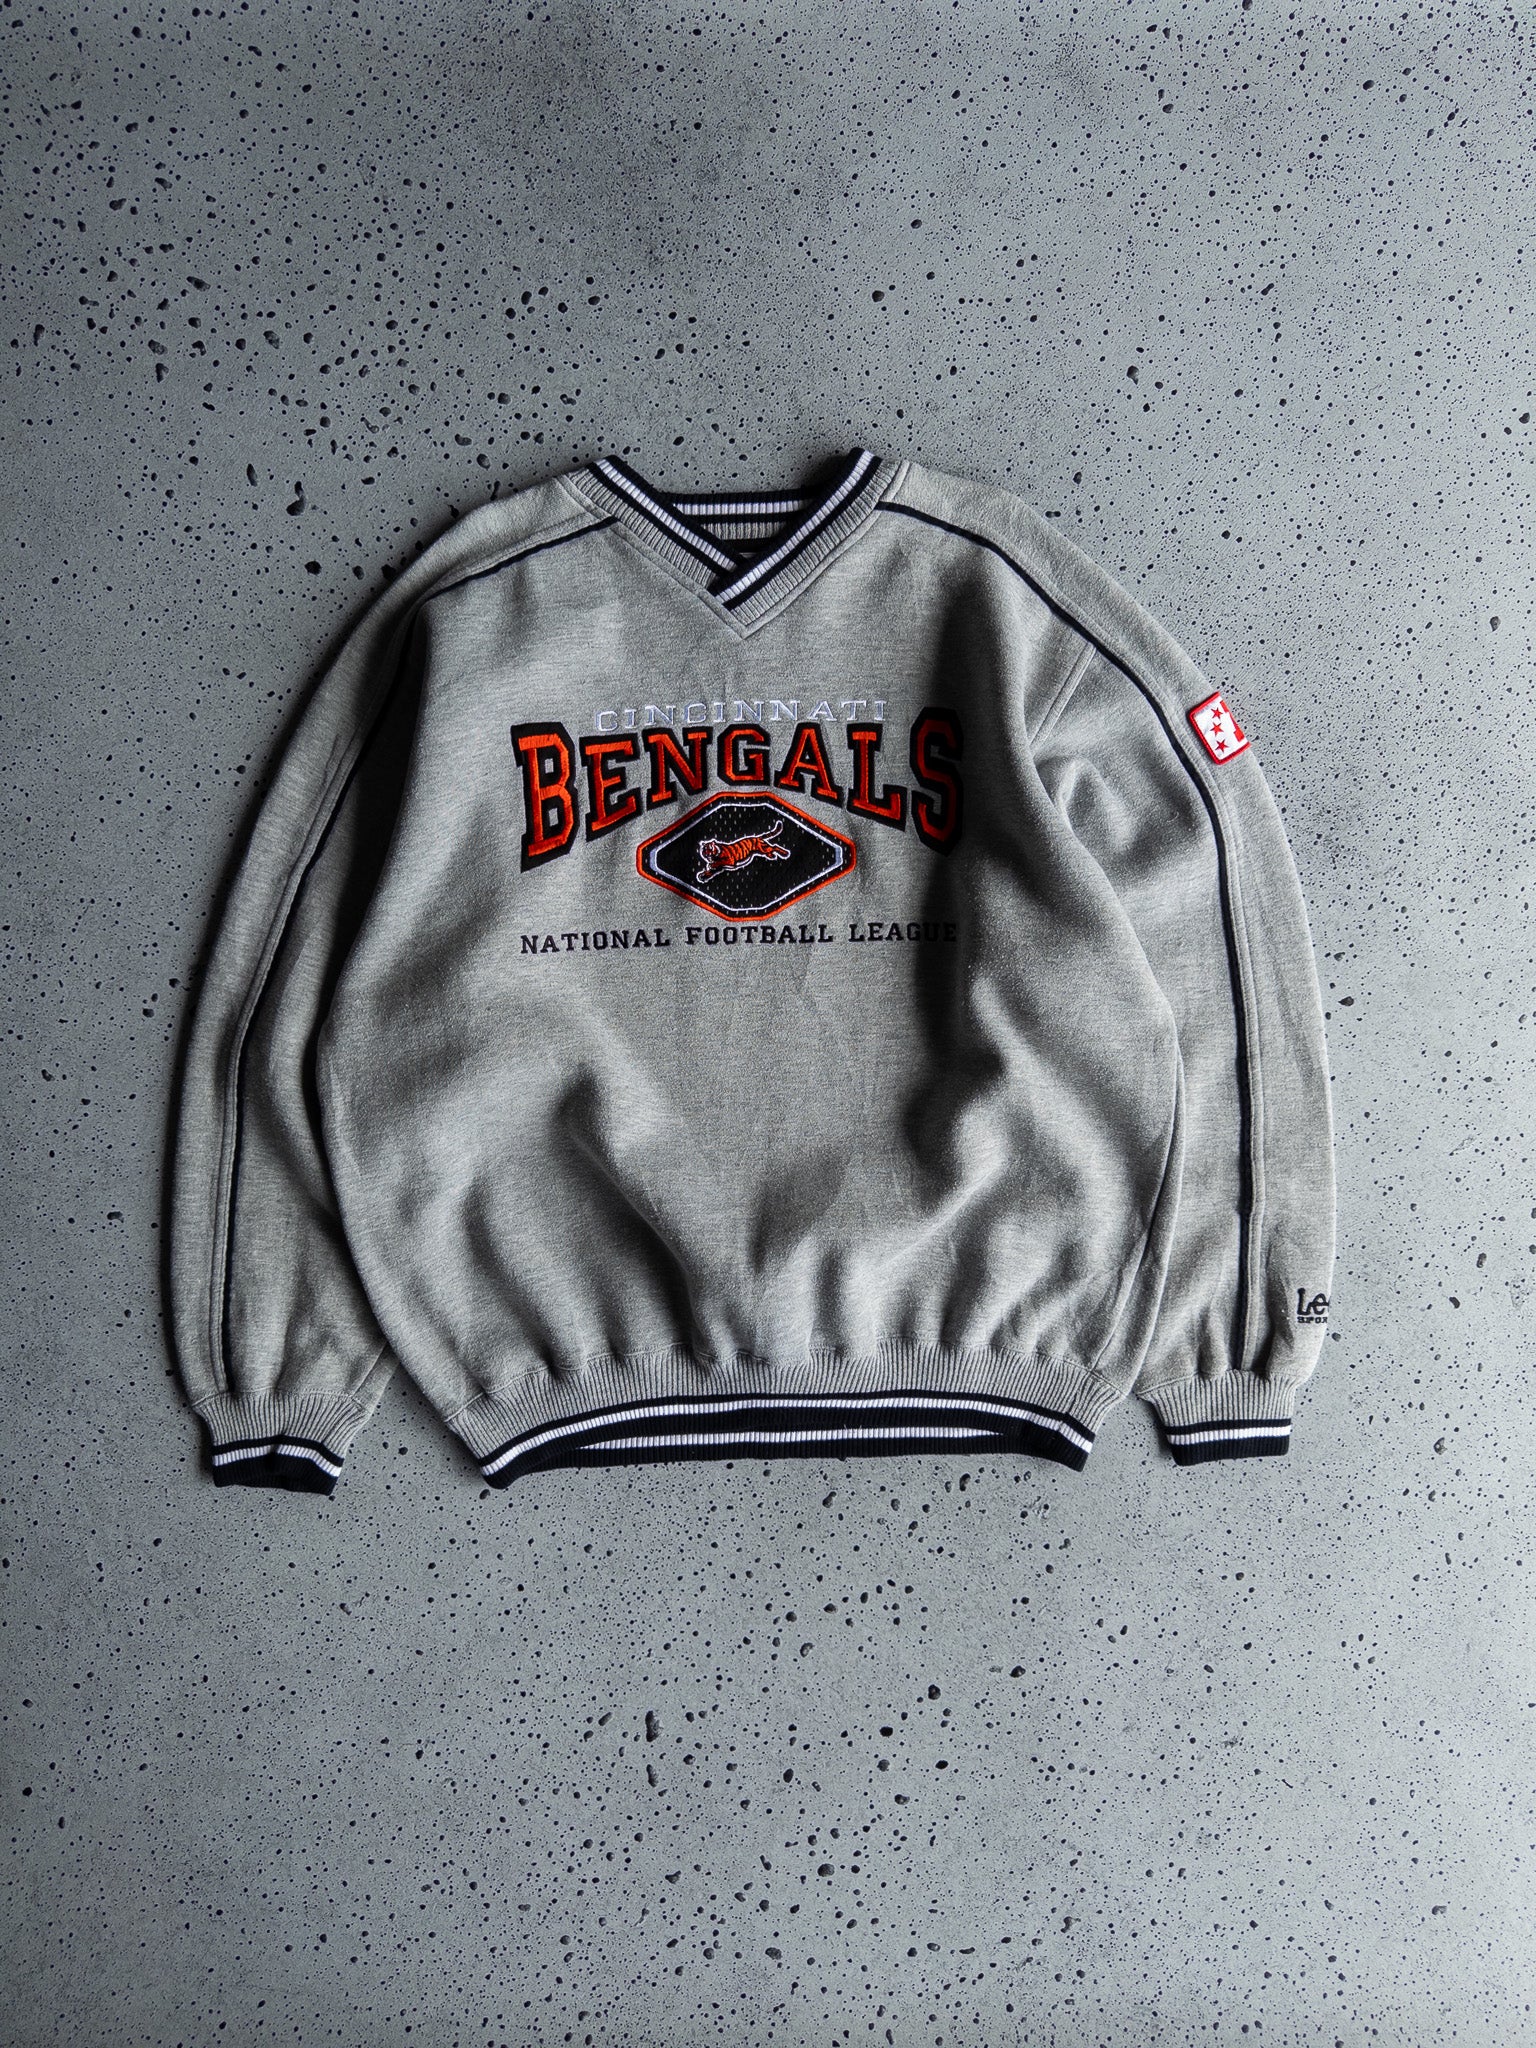 Vintage Cincinnati Bengals Sweatshirt (L)